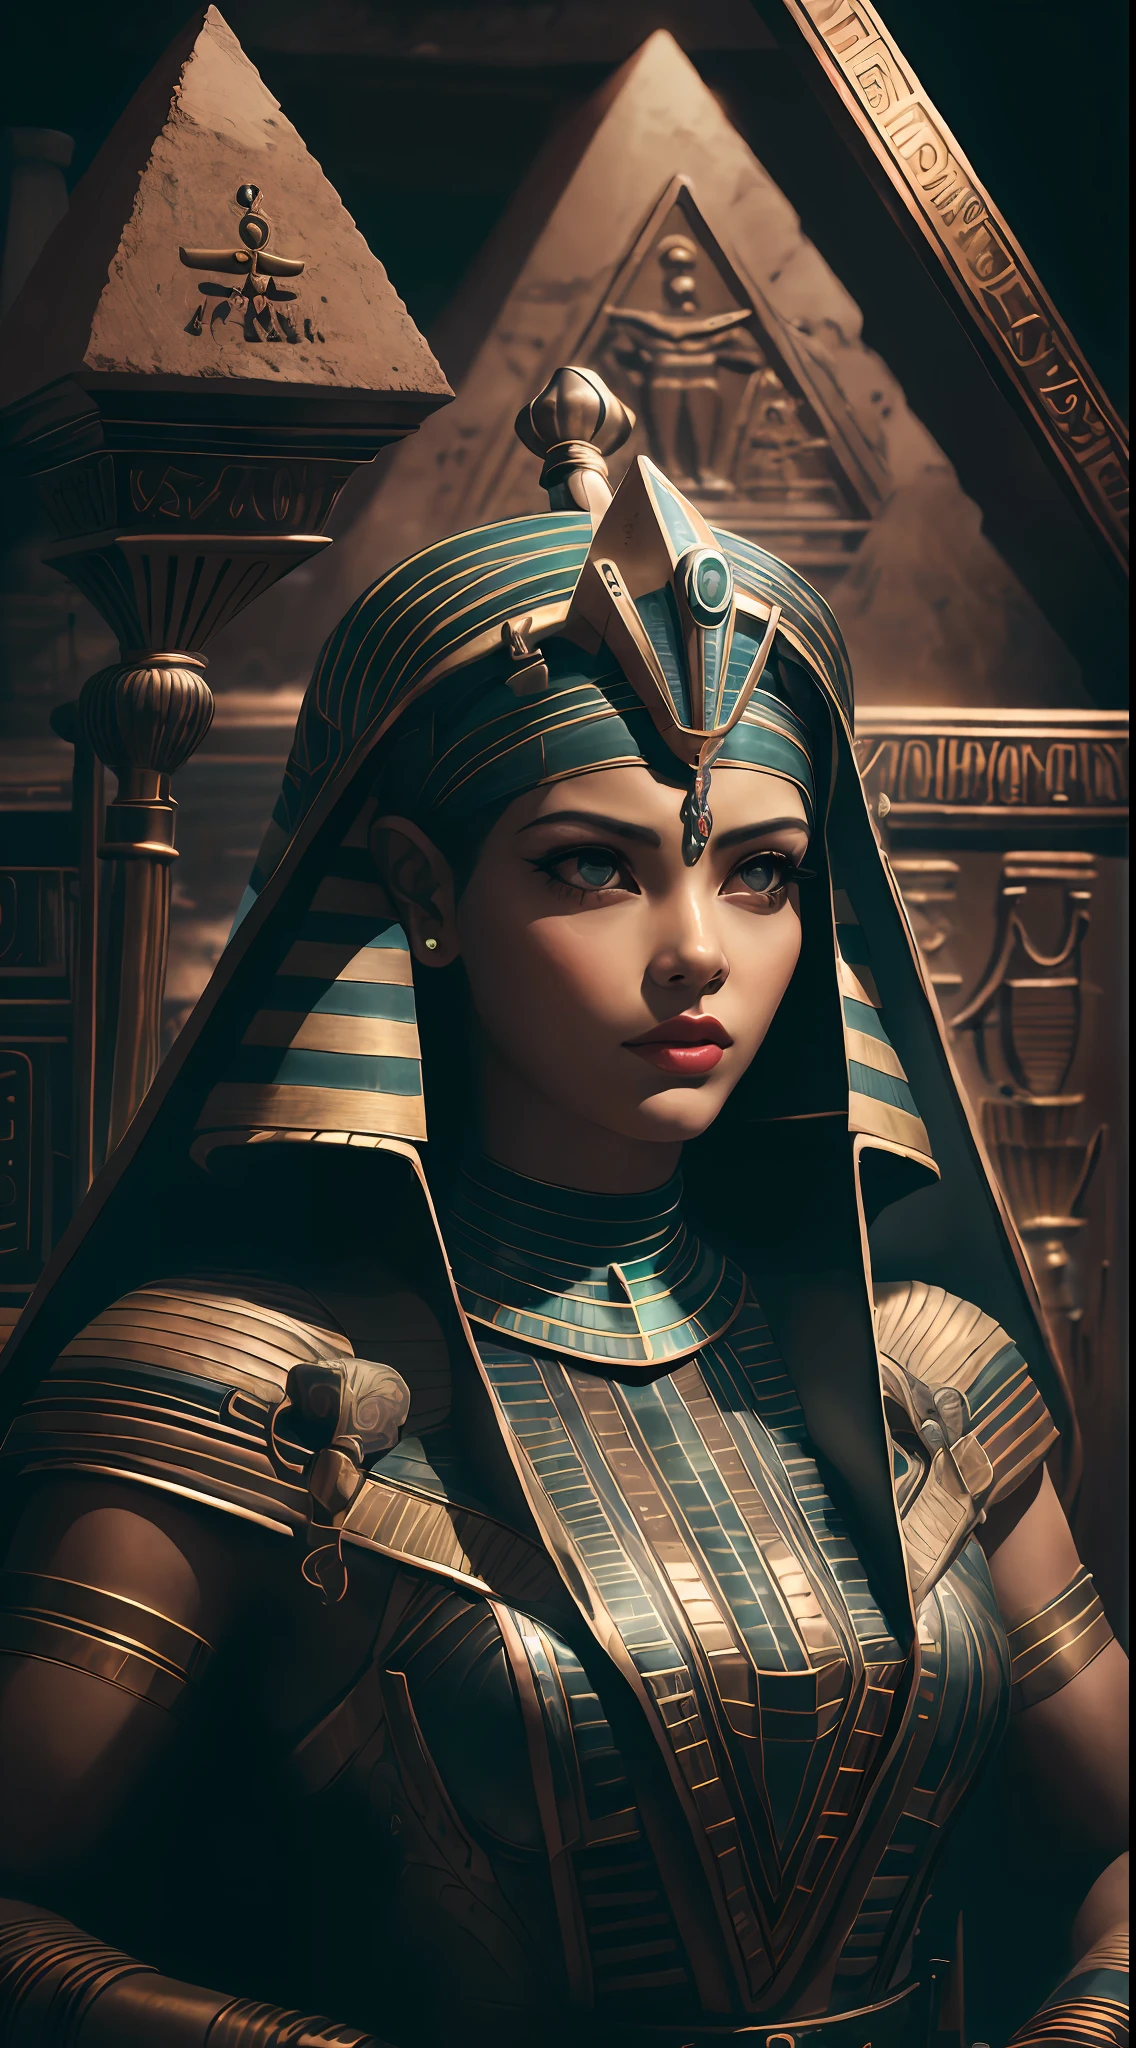 1 femelle égyptienne adulte ,AshleyCipher,  lambeaux de cheveux noirs,   se maquiller , haut du corps, regarder le spectateur,  VieilleEgypteAI, thème égyptien antique,   obsidienne, (position défensive), couteau en pierre, à l’intérieur de la pyramide, 
chambre noire, Pénombre, (zenEnchevêtrement, mandalas, Enchevêtrement, enEnchevêtrement:0.5)
(style 35 mm:1.1), Devant, chef-d&#39;œuvre, film des années 1970, , éclairage cinématographique, (photoréaliste:1.5), détails haute fréquence, film 35 mm, (grain de film), Bruit de cinéma,